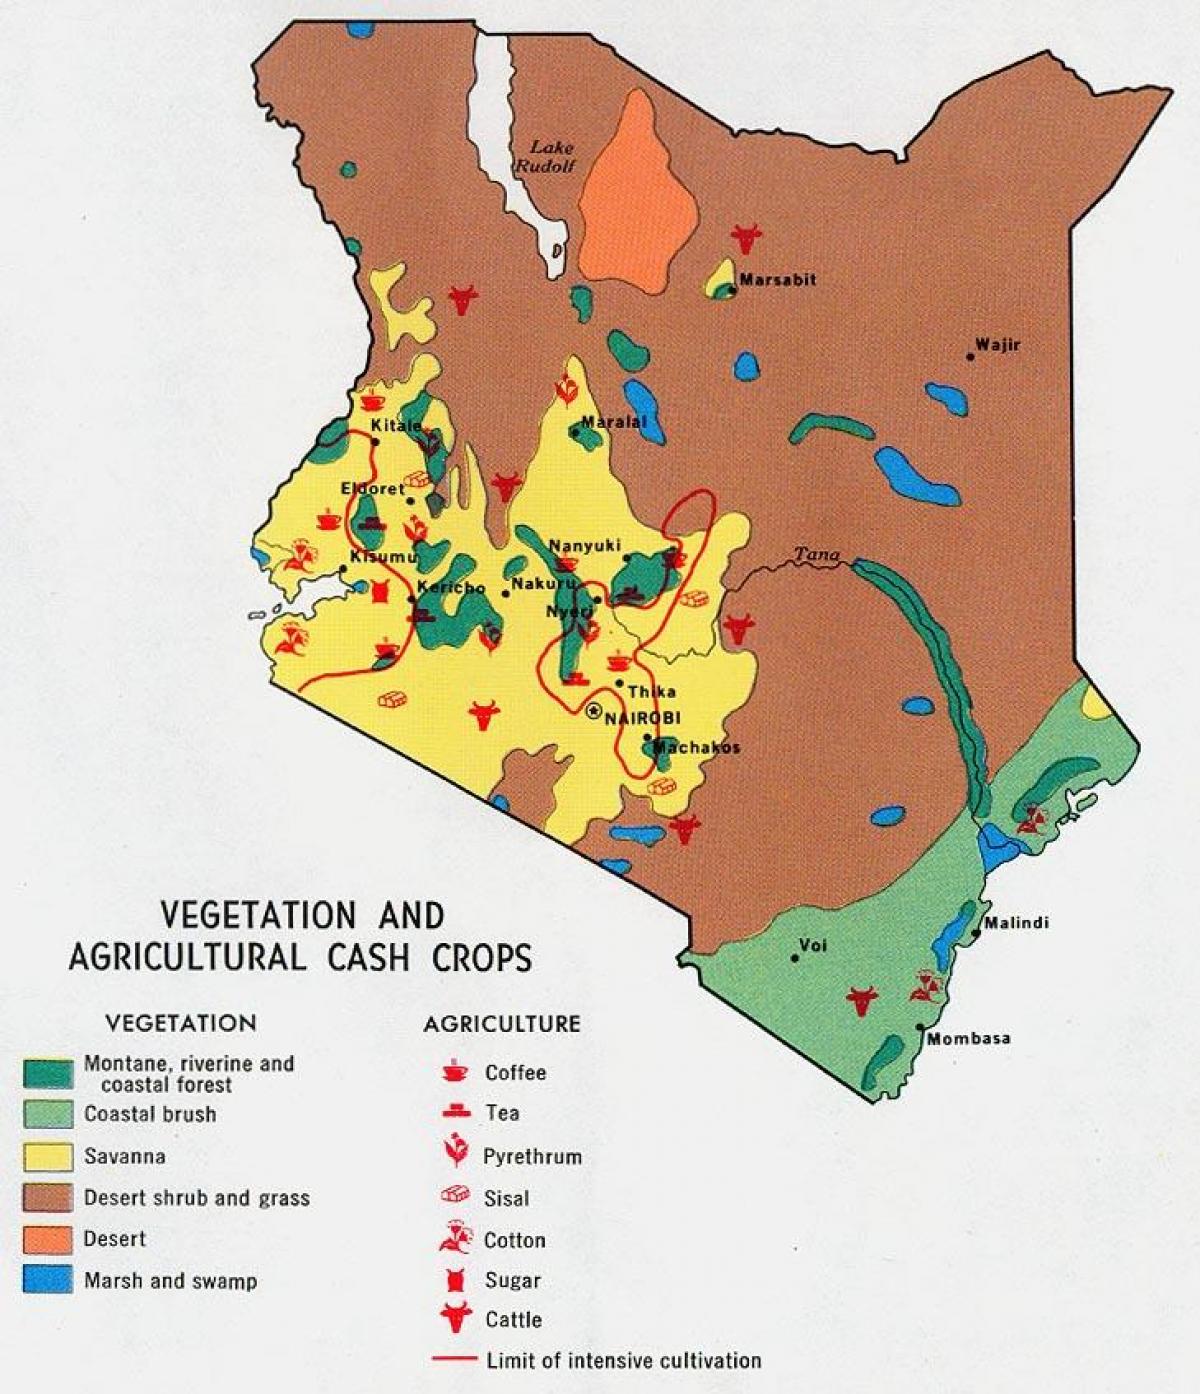 რუკა კენიაში ბუნებრივი რესურსების